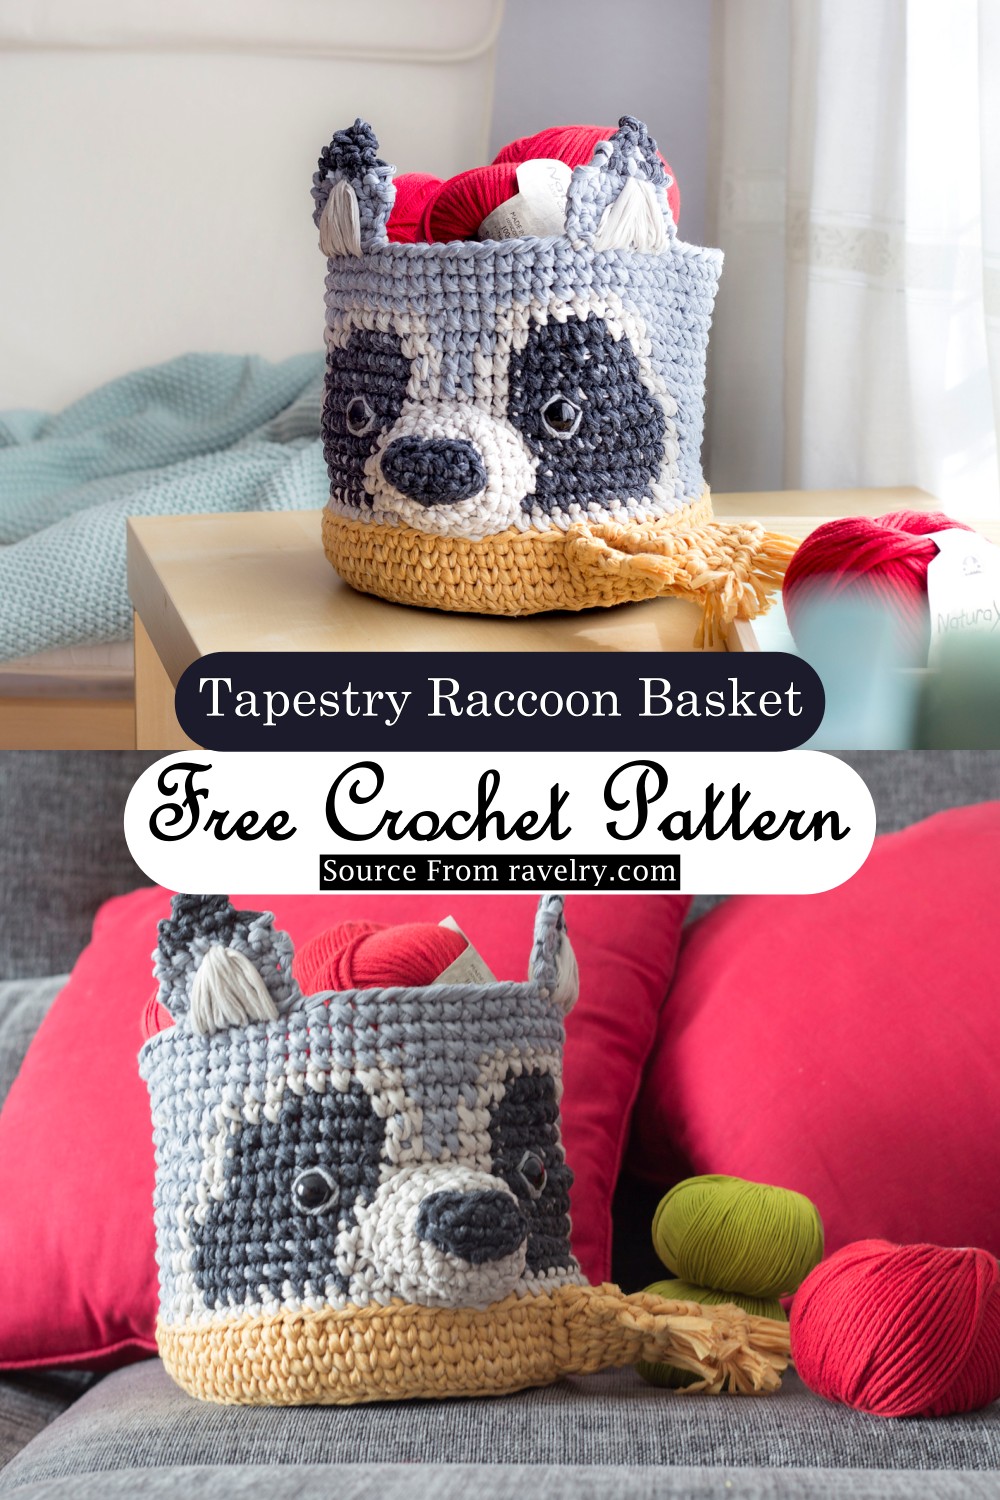 Tapestry Raccoon Basket